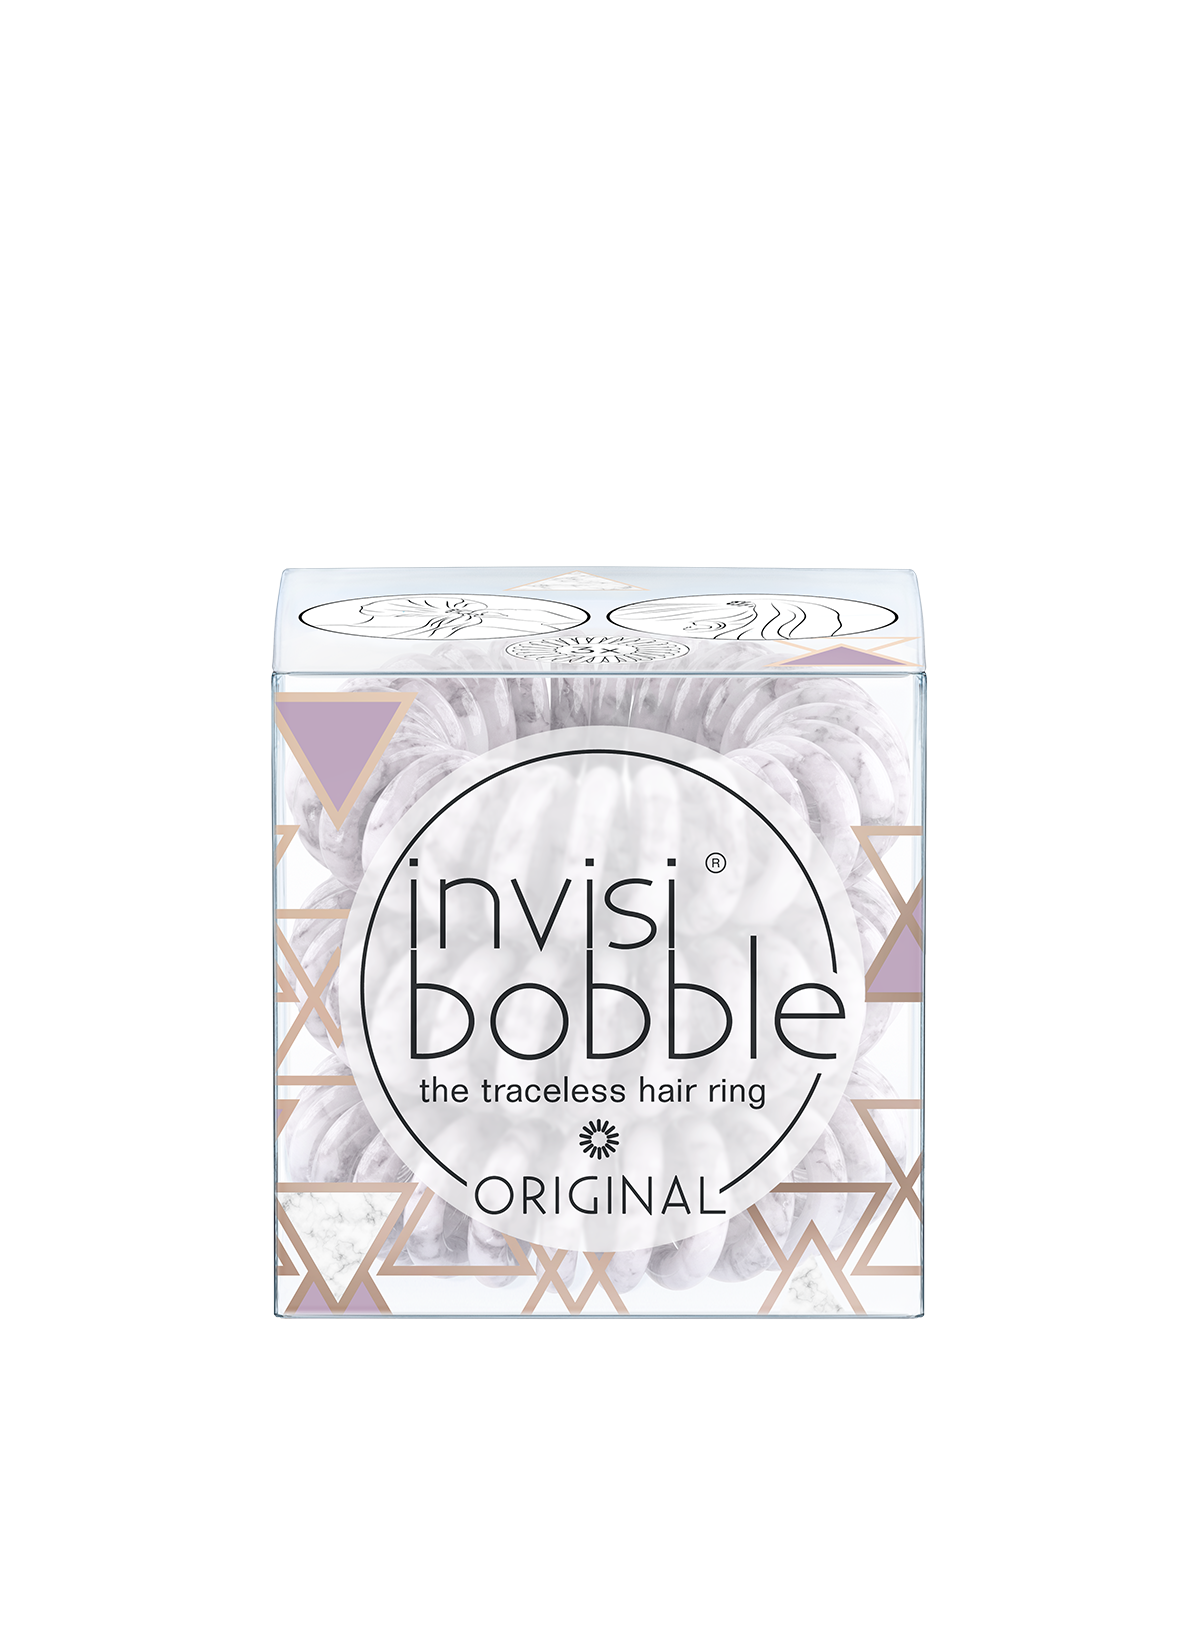 Invisibobble - original